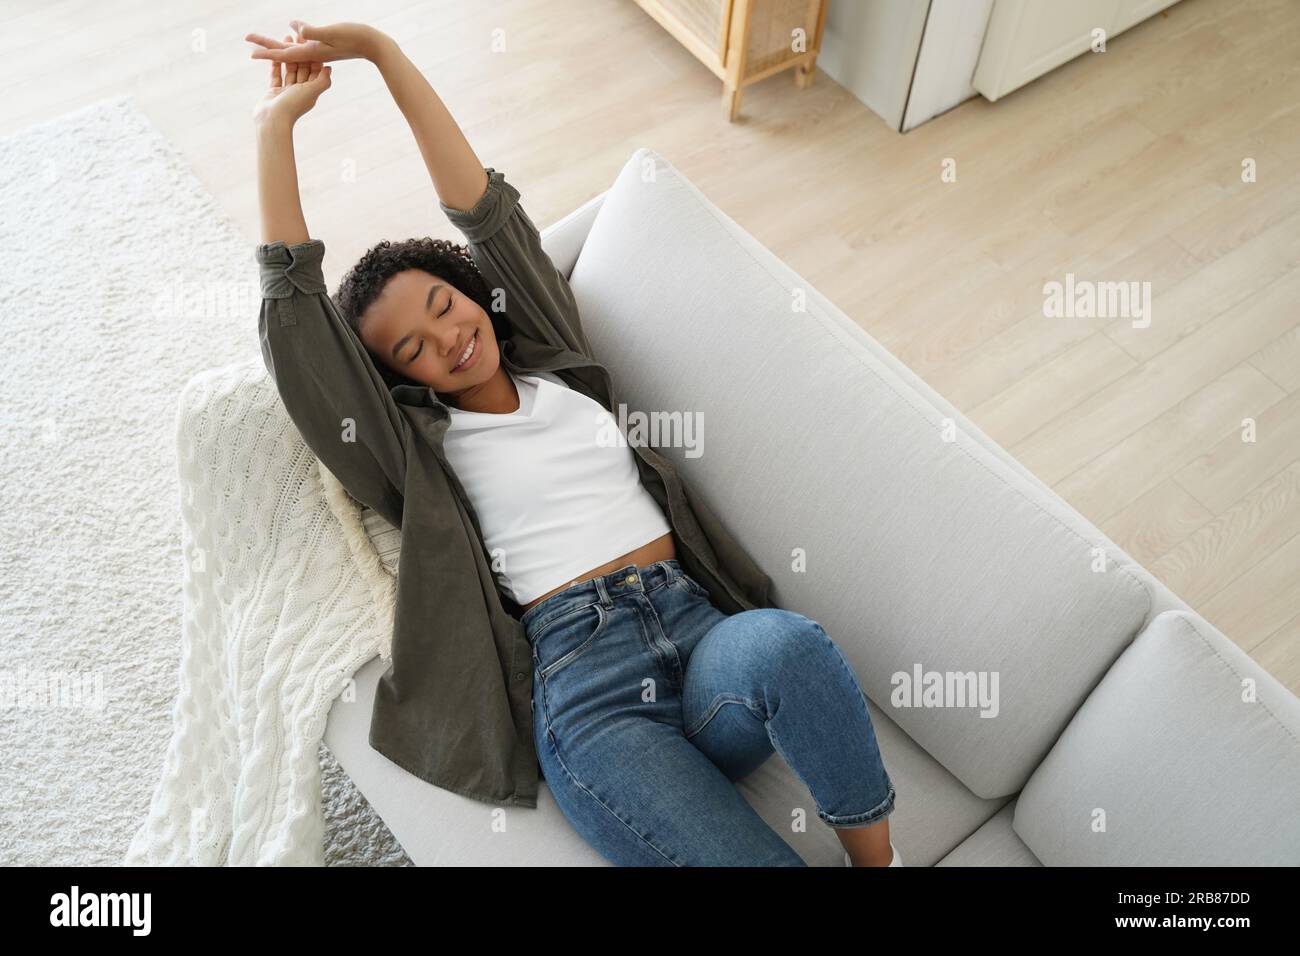 Ein lächelndes Mädchen dehnt sich nach einem Nickerchen auf dem bequemen Sofa zu Hause. Glücklicher Teenager entspannt sich und genießt einen ruhigen Wochenendtrip. Stockfoto